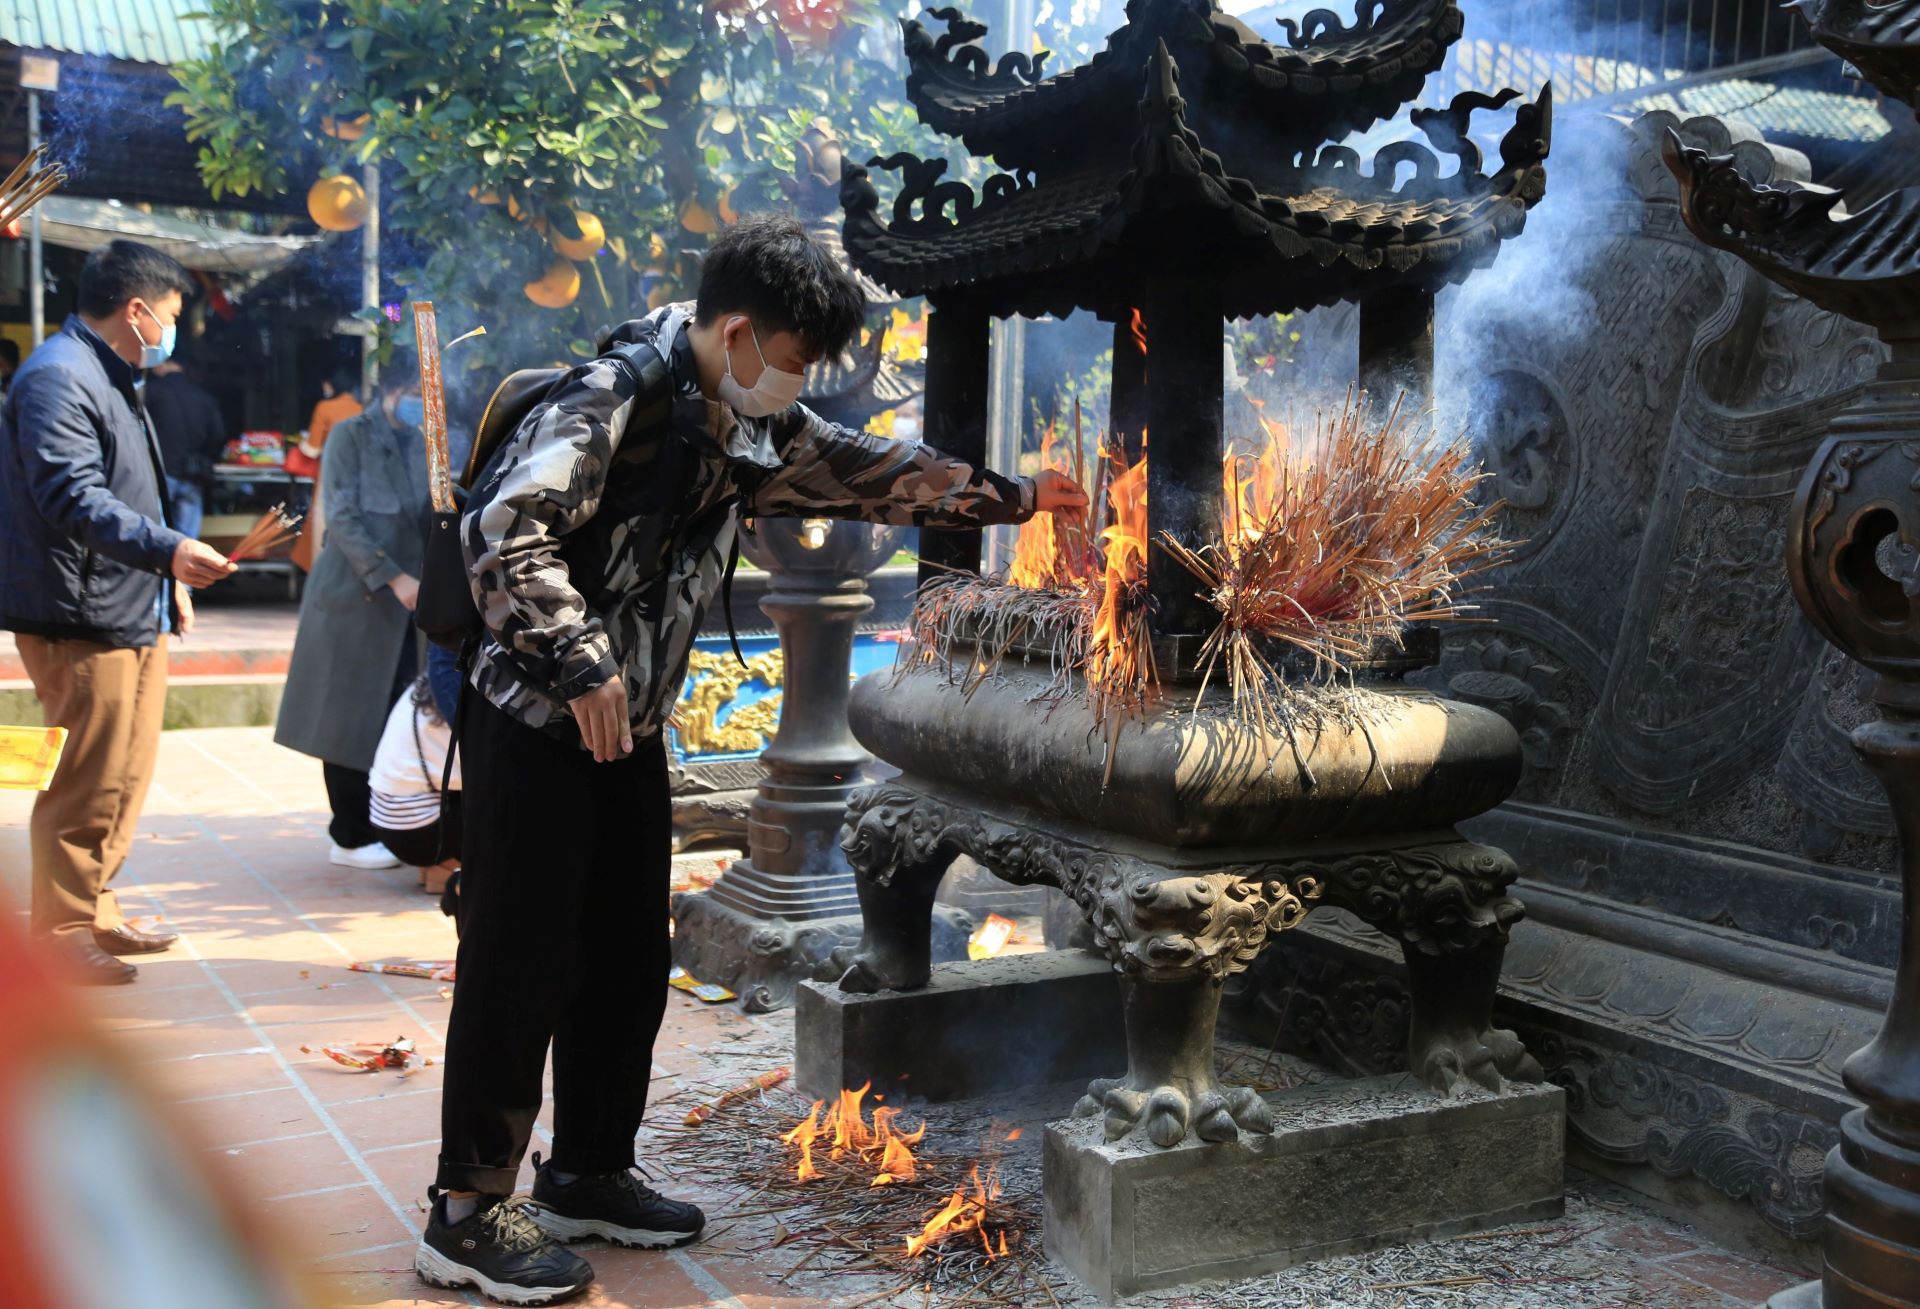 Tái diễn cảnh xức dầu tượng hổ ở chùa Hương Tích - Ảnh 9.